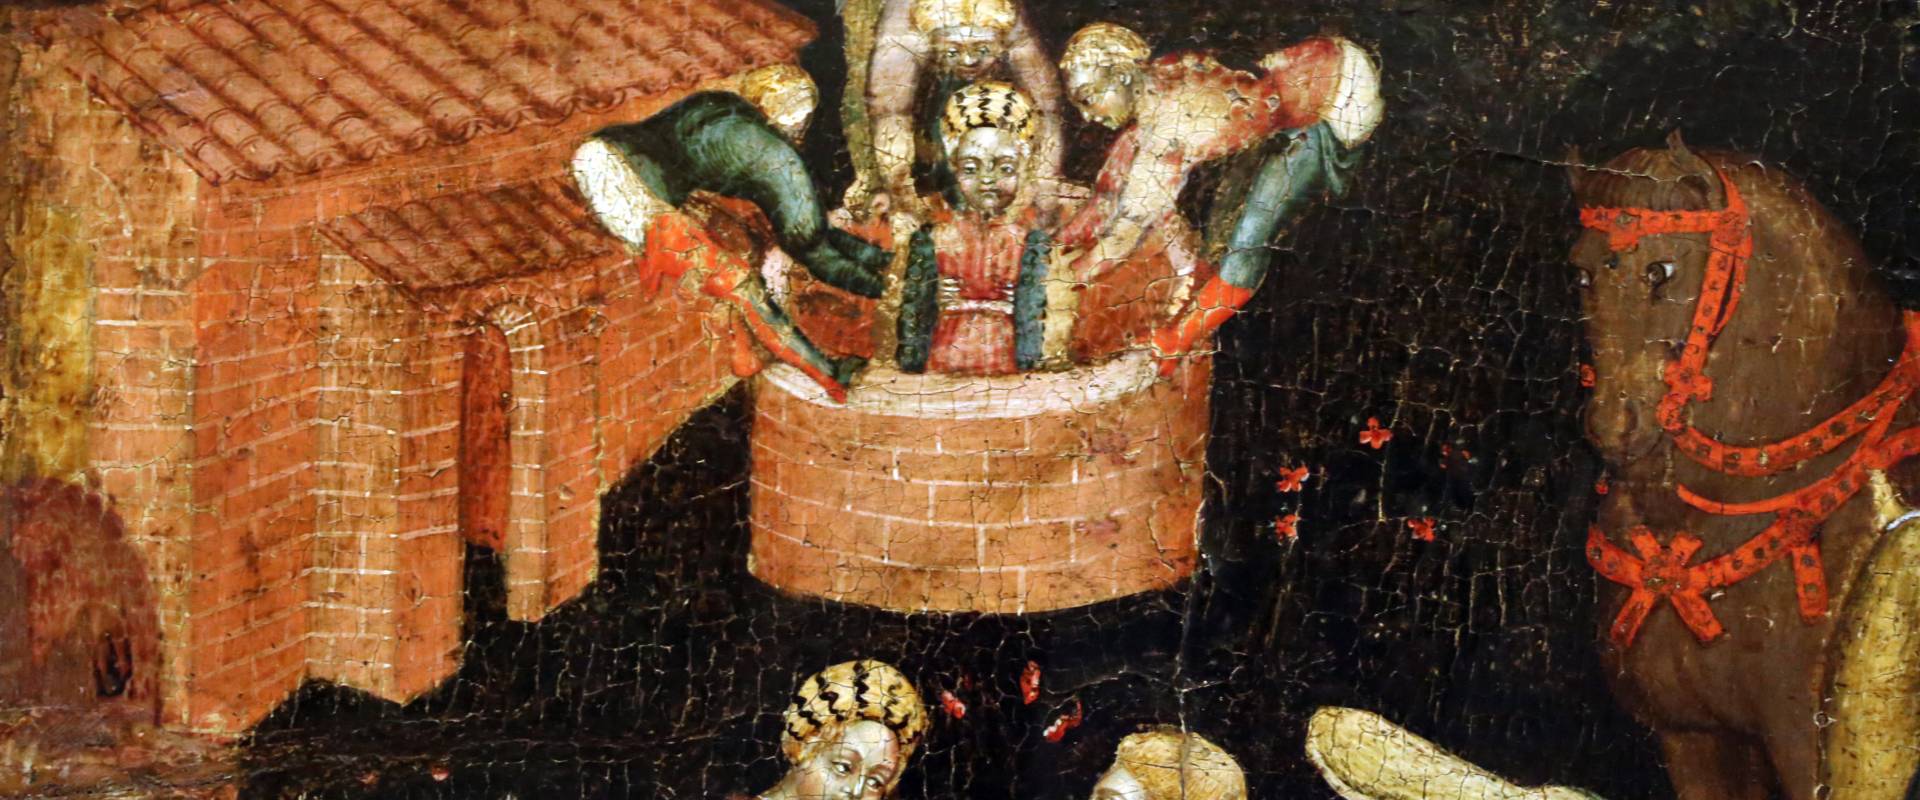 Secondo maestro di carpi, leggenda di san giovanni boccadoro (crisostomo), 1430 ca. 02 donna in pozzo photo by Sailko